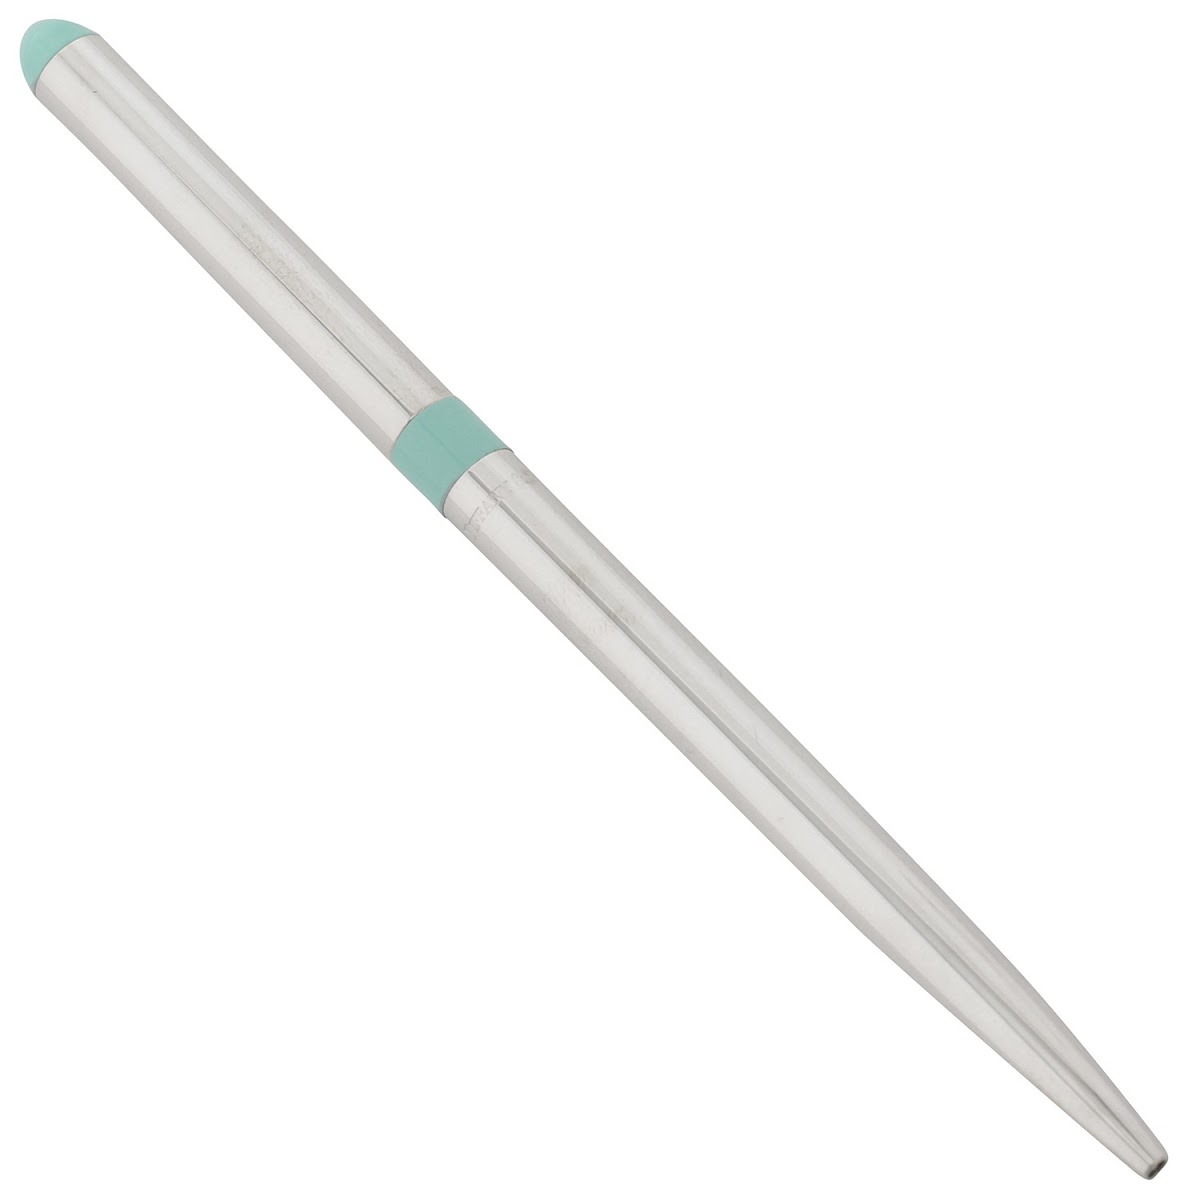 ティファニー ペン 62385669 ブルー バンド パースペン ボールペン ティファニーブルー pbtf00012l ボールペン ブランド 高級 お祝い 筆